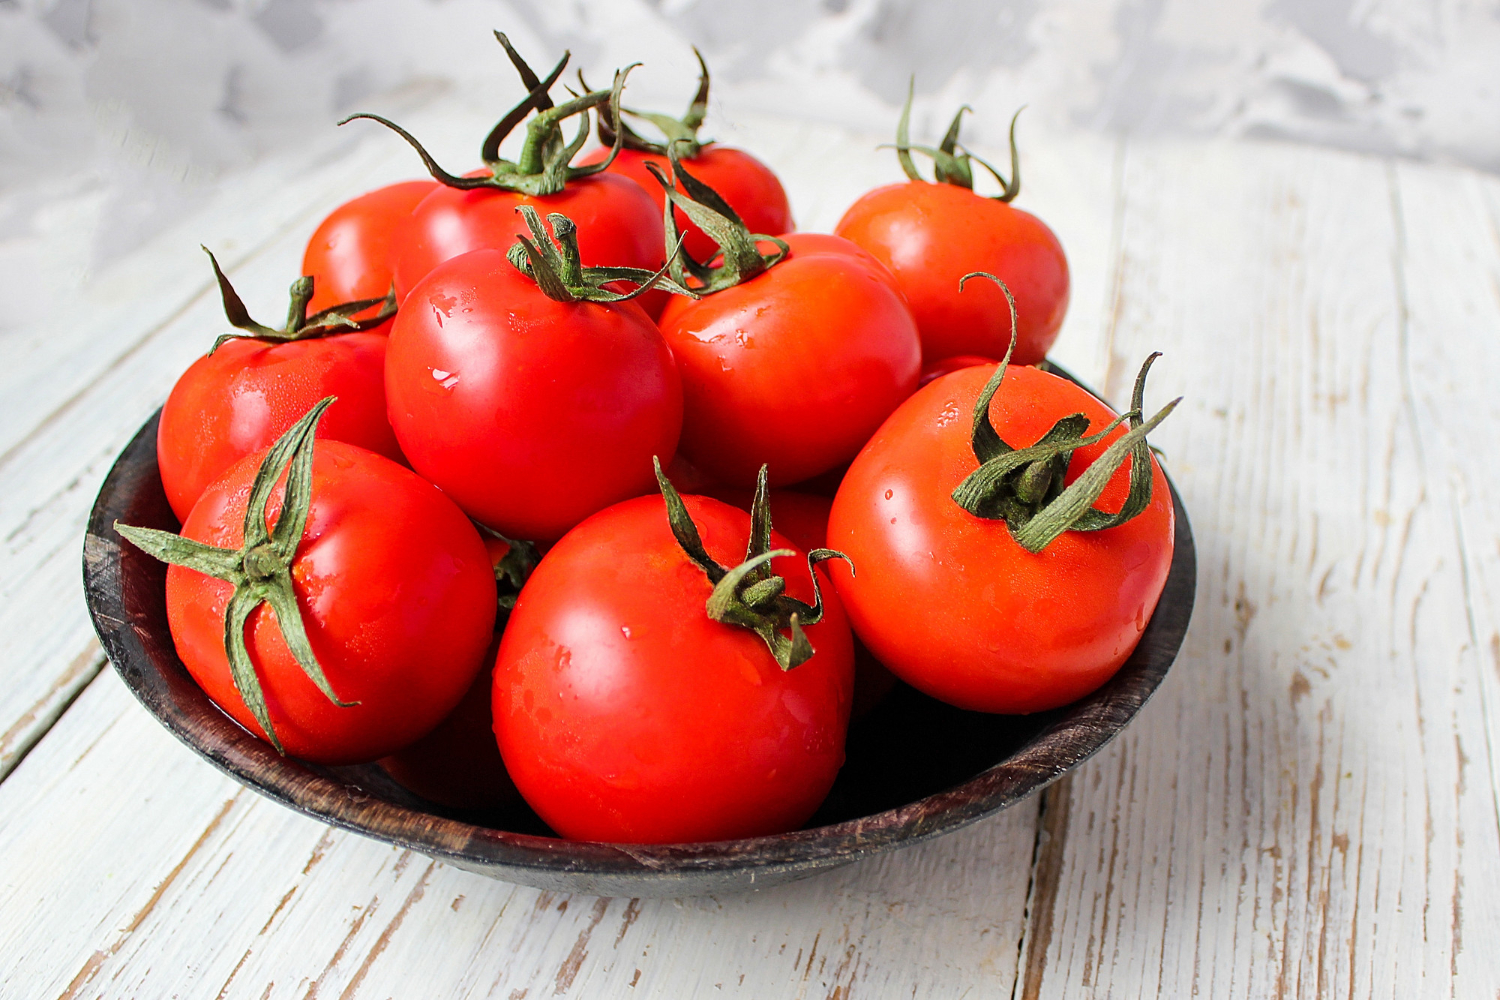 トマトの重さを知りたい場合、どうすればいいですか？